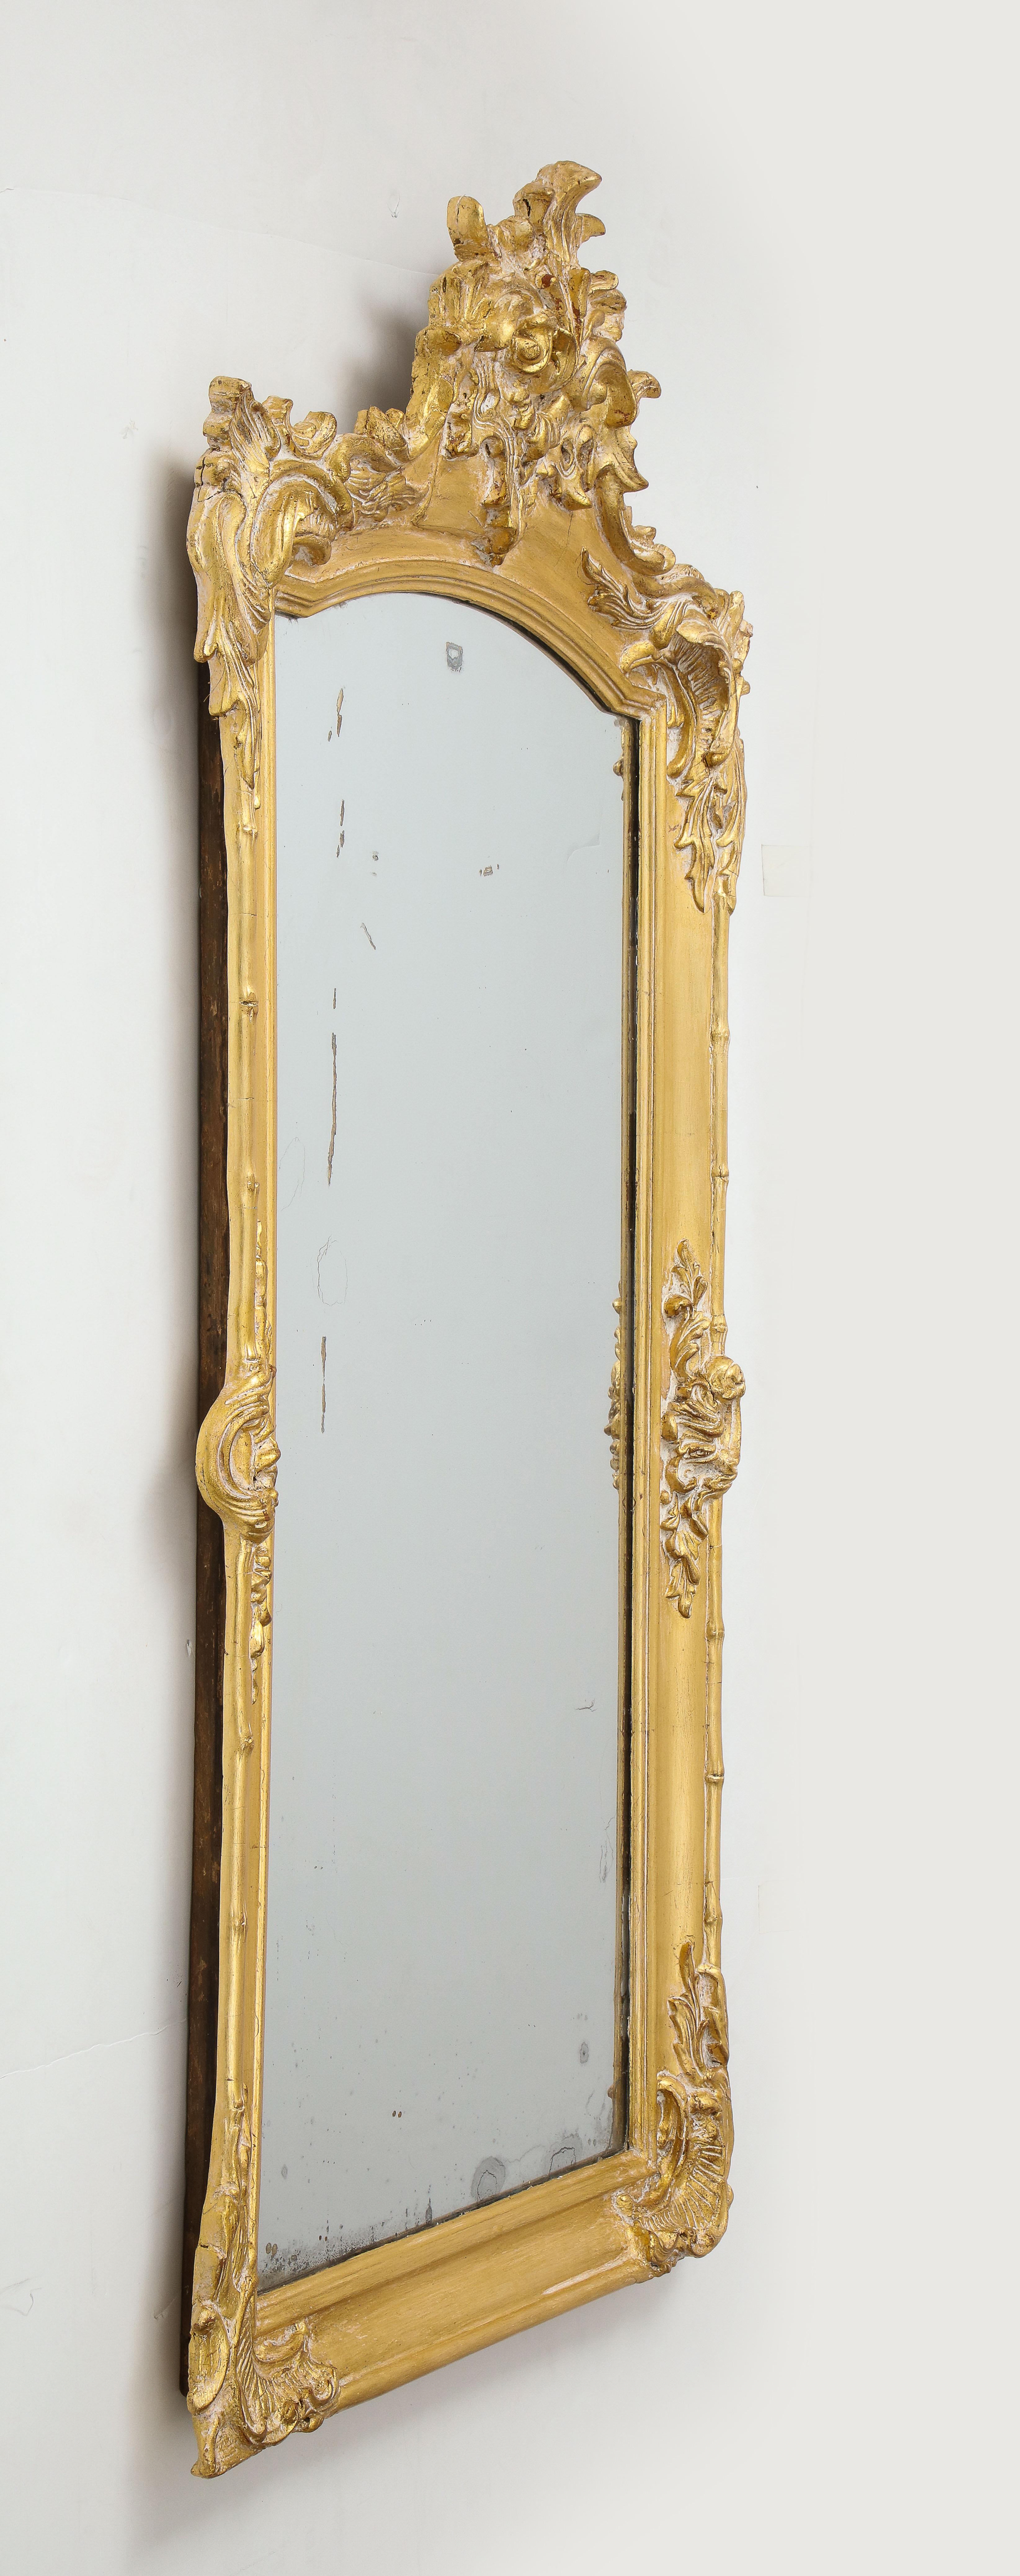 Miroir fantaisiste français du 19ème siècle, sculpté et doré, avec un motif stylisé de bambou et de feuille. Miroir d'origine en verre au mercure vieilli.